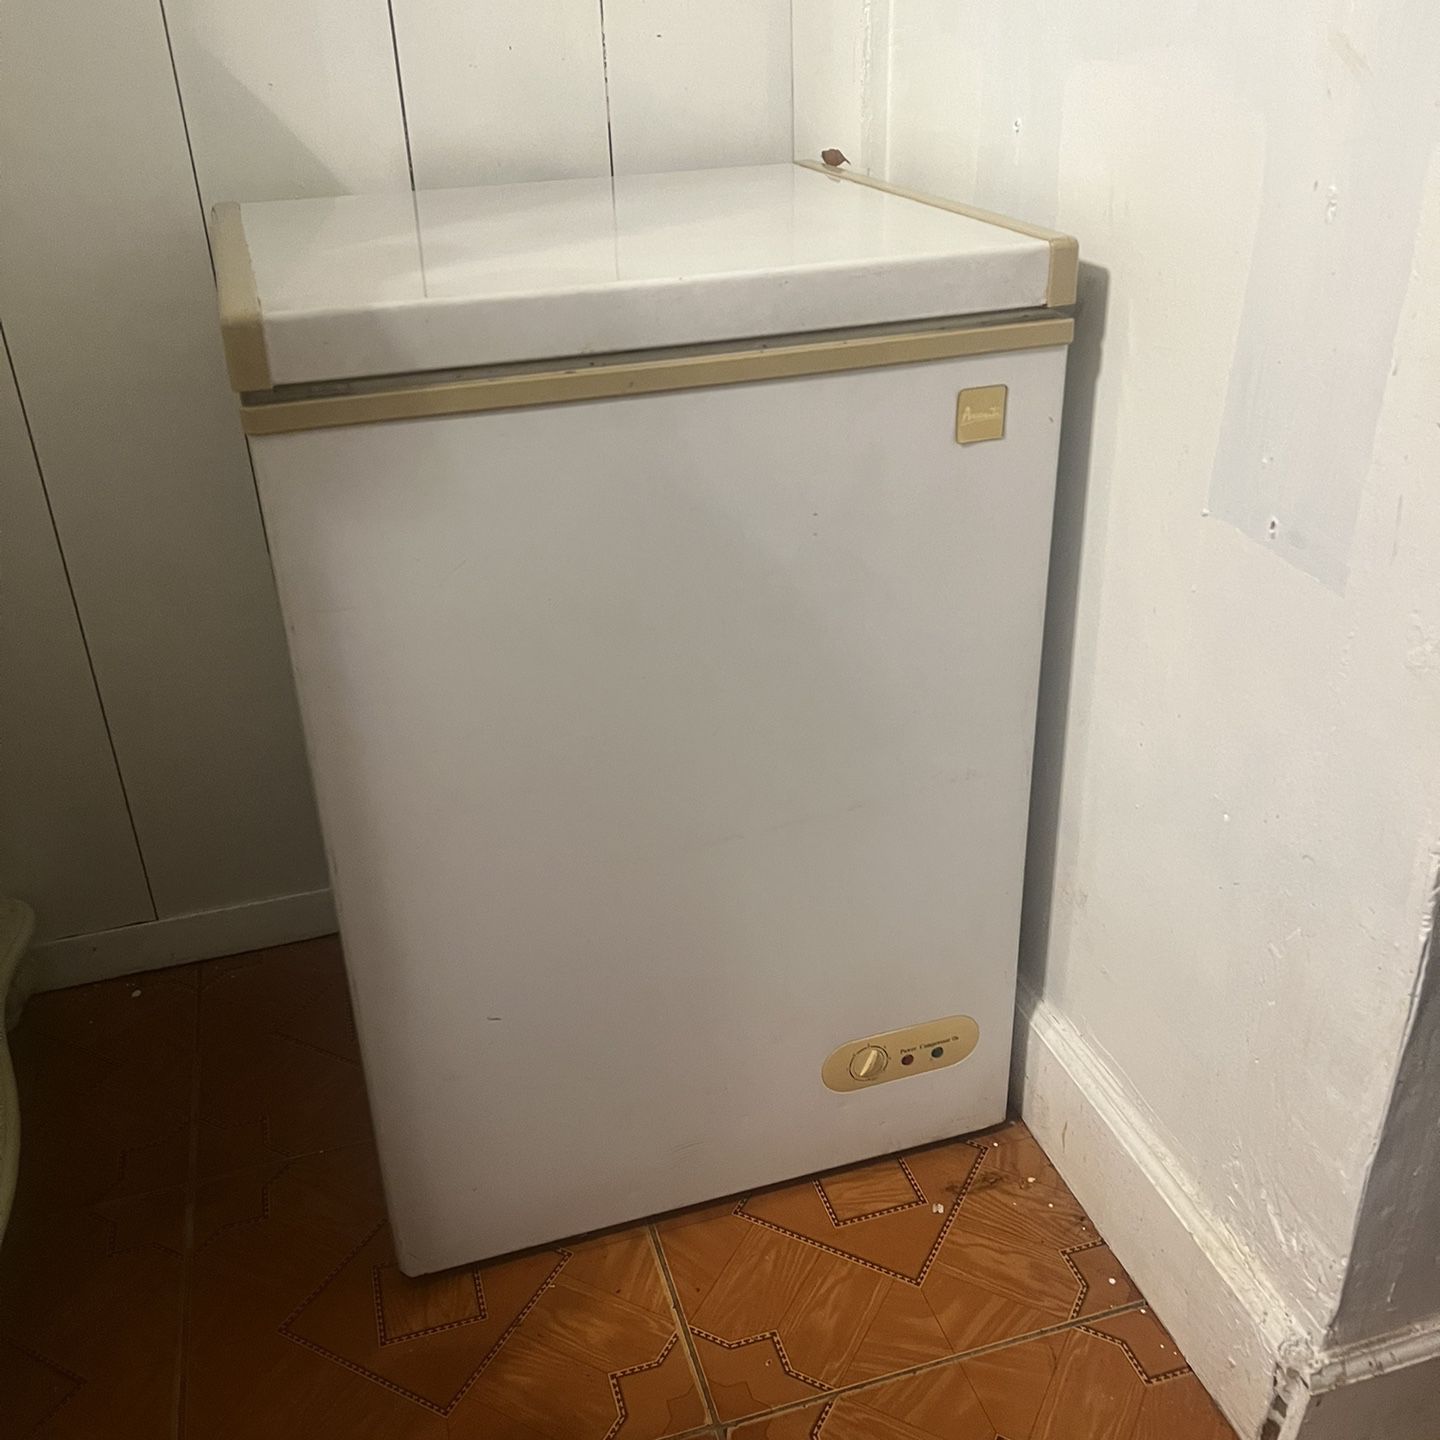 Refrigerator Casi Nuevo 75.00Refrigerador